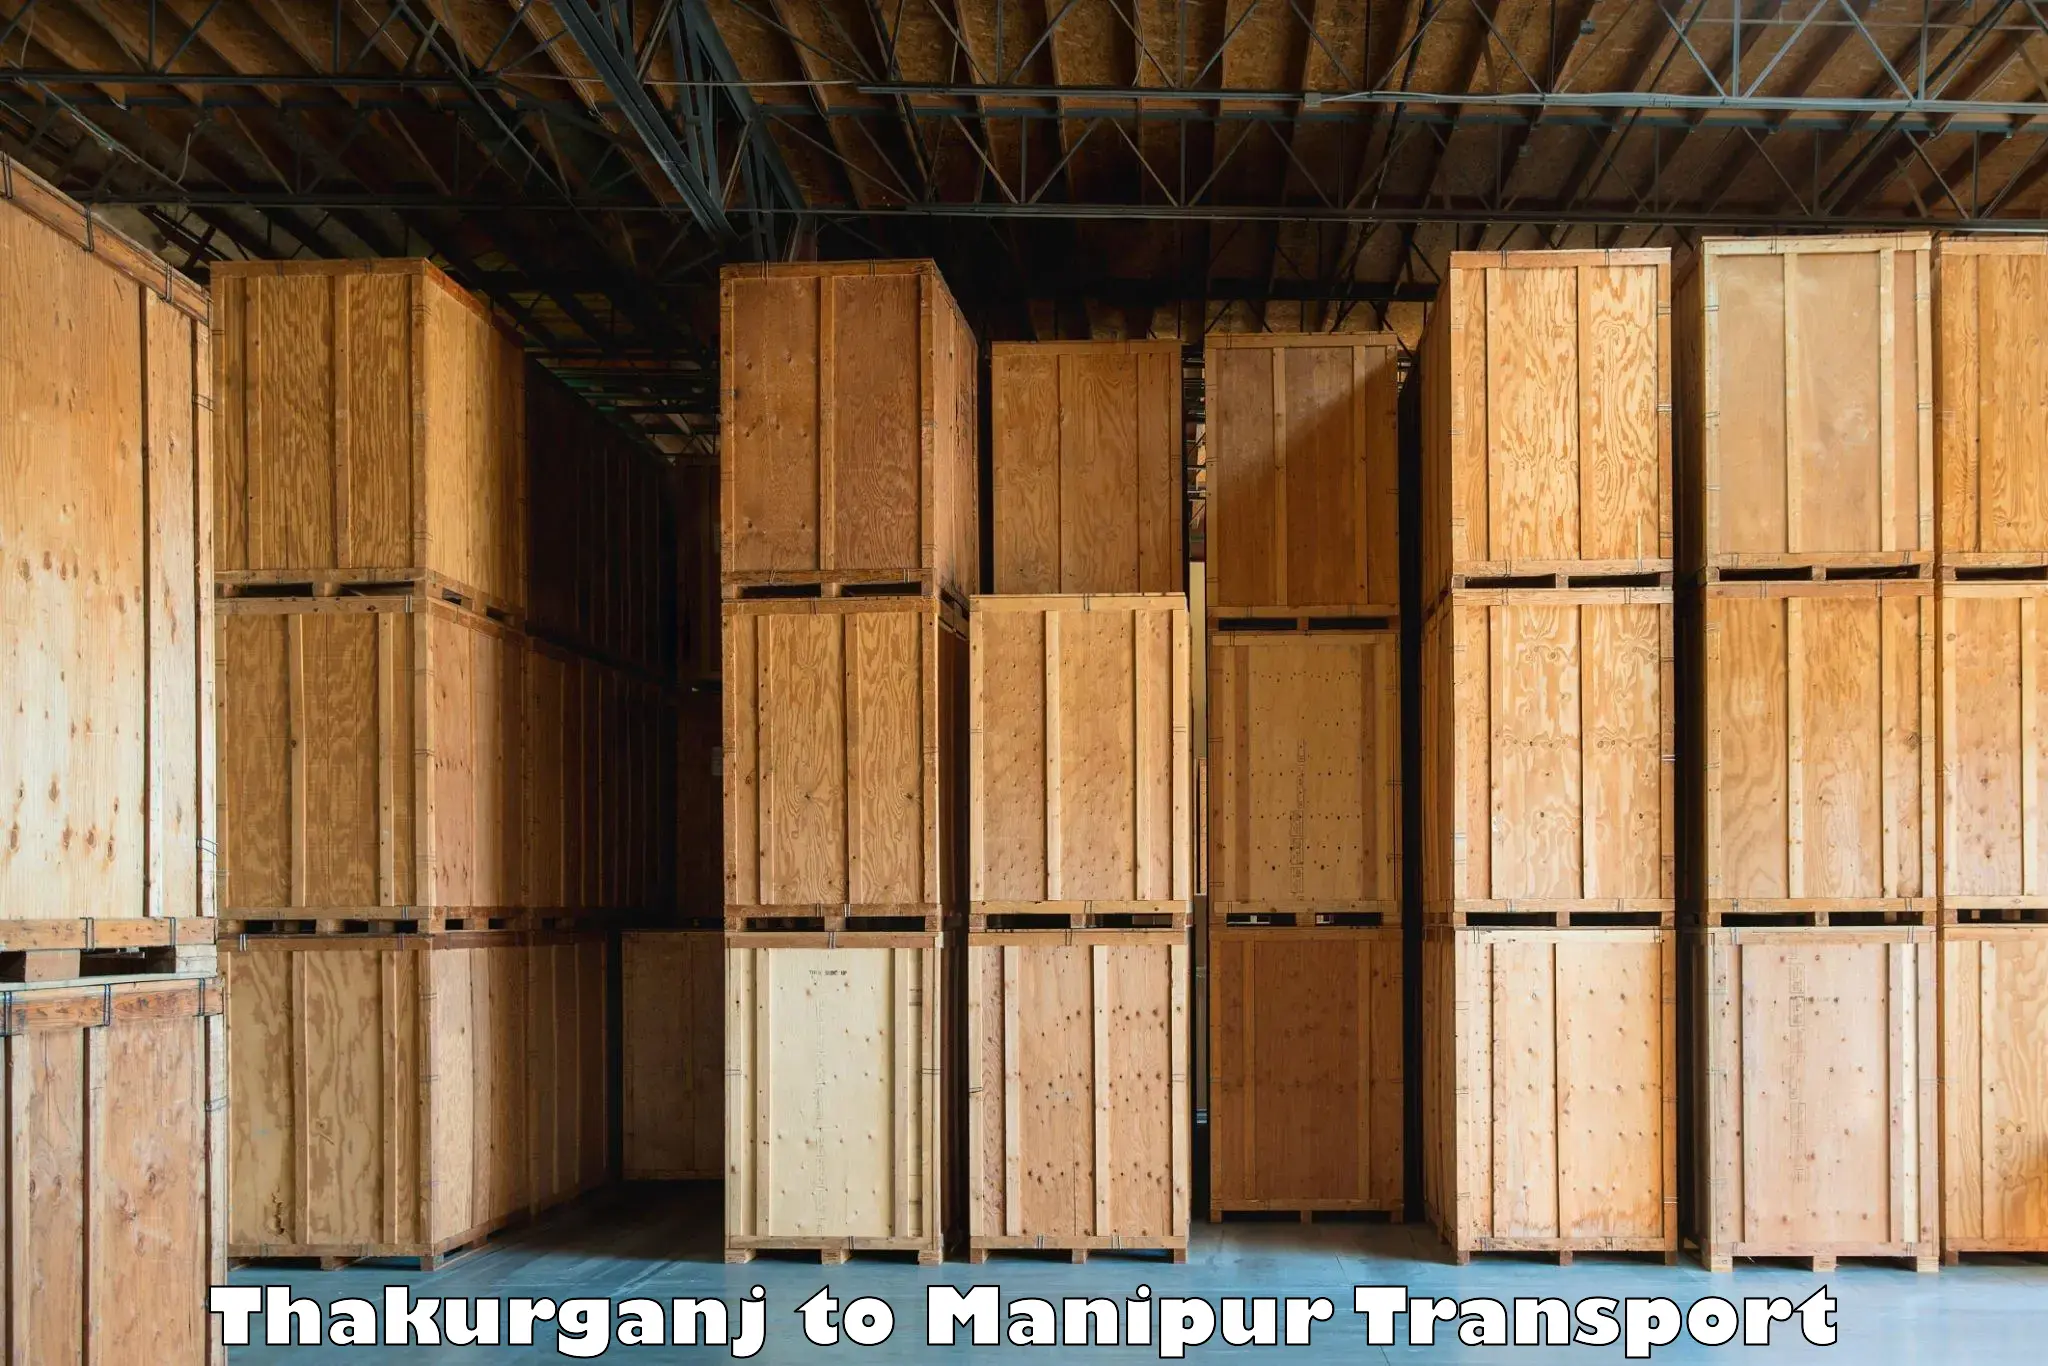 Online transport service Thakurganj to Imphal